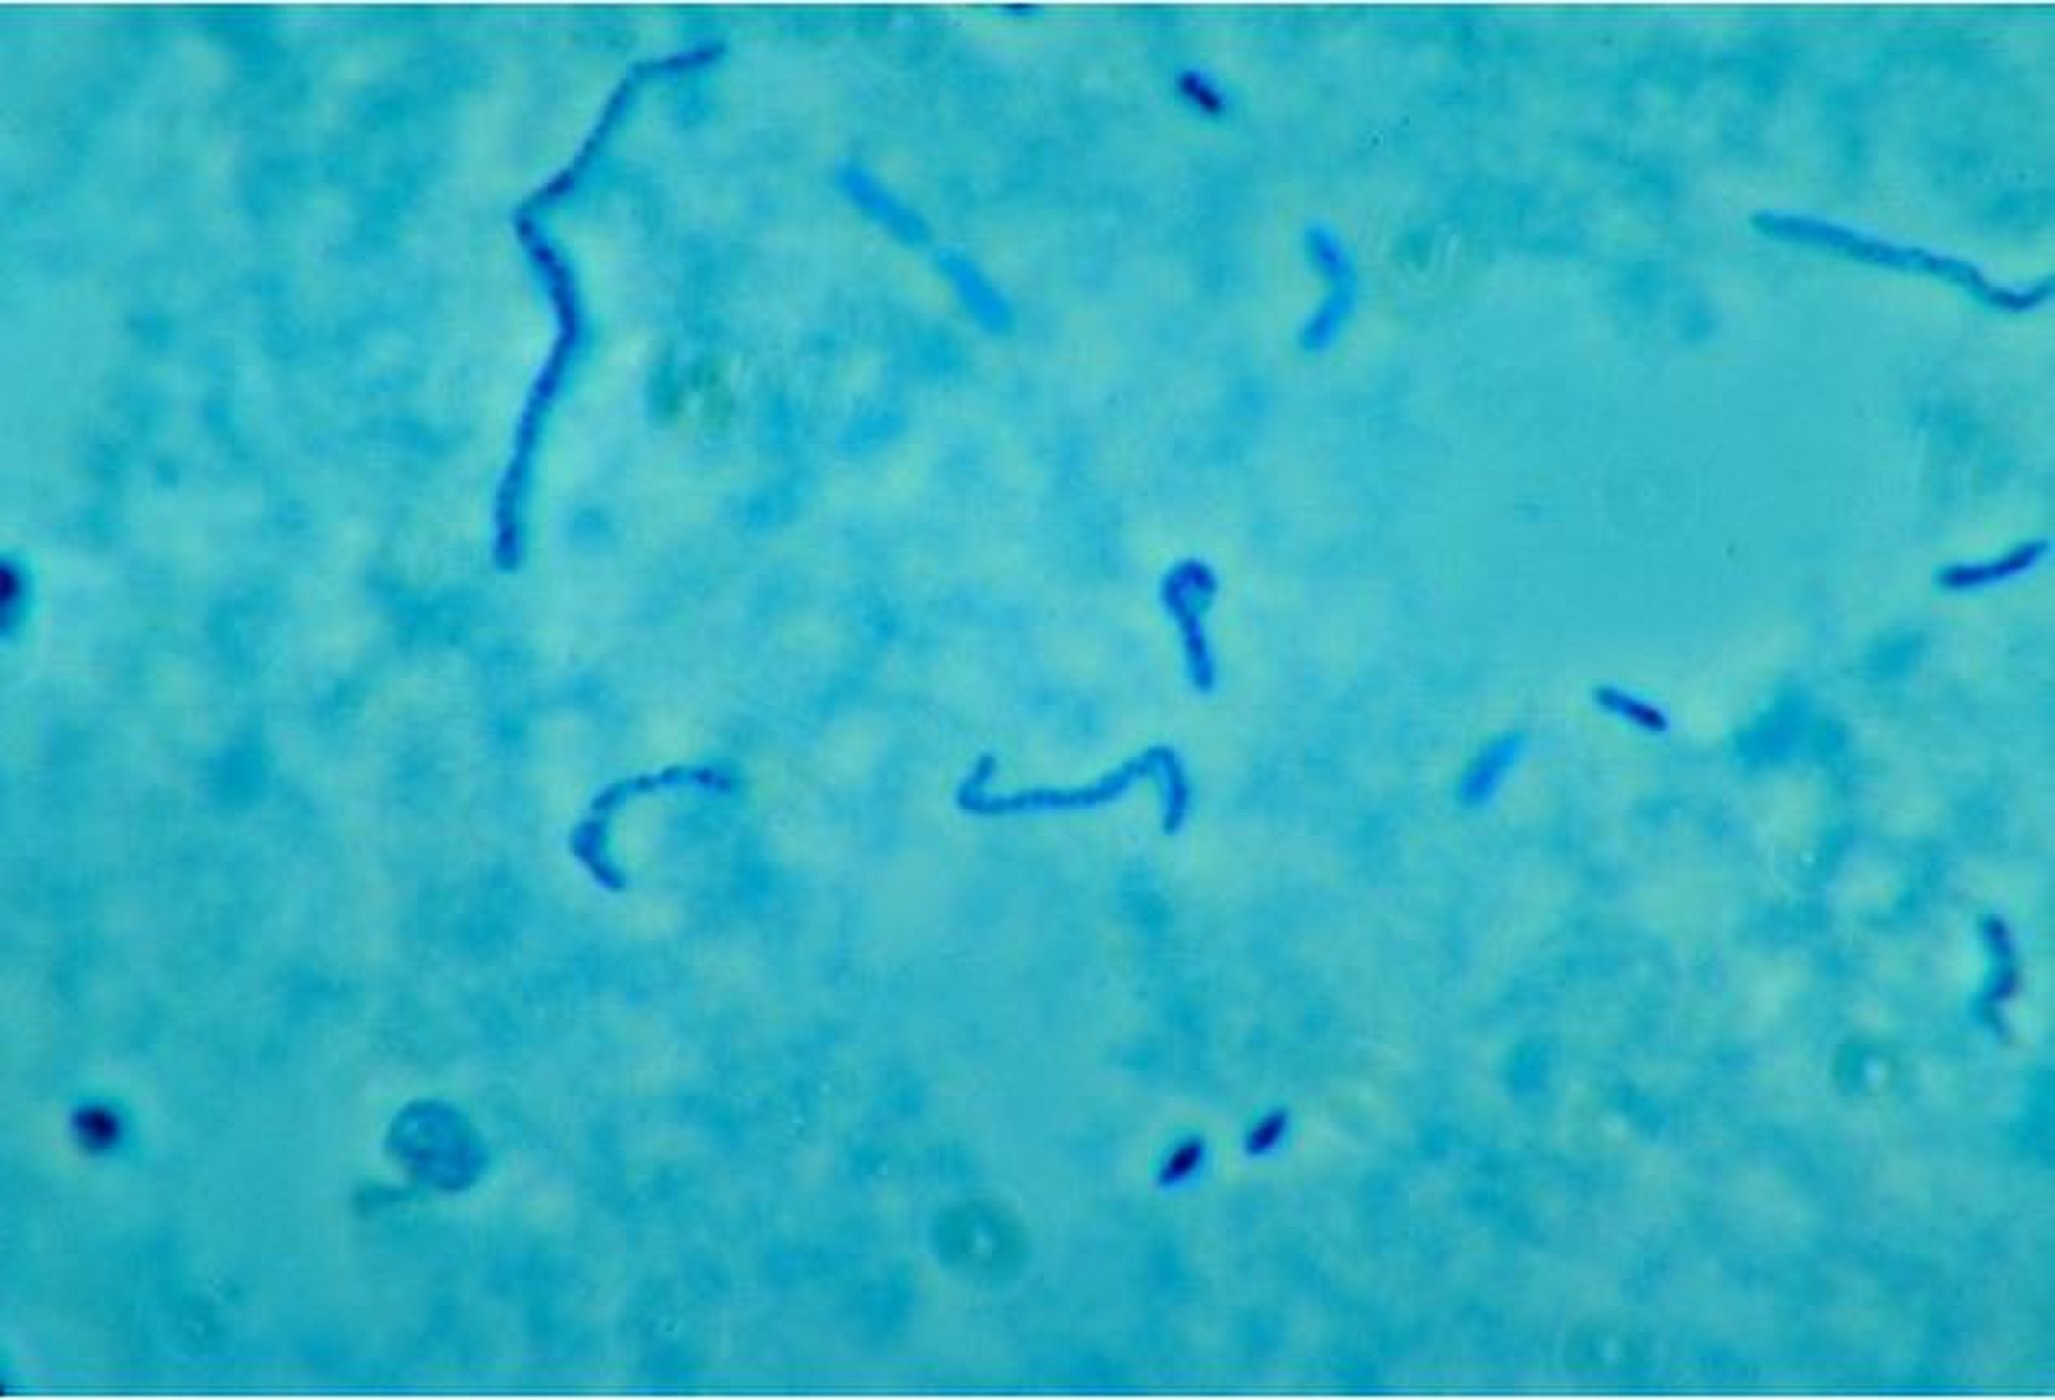 Bactéria Fusobacterium necrophorum, que causa a síndrome de Lemierre (Foto: CDC/ Dr. Lillian V. Holdeman)